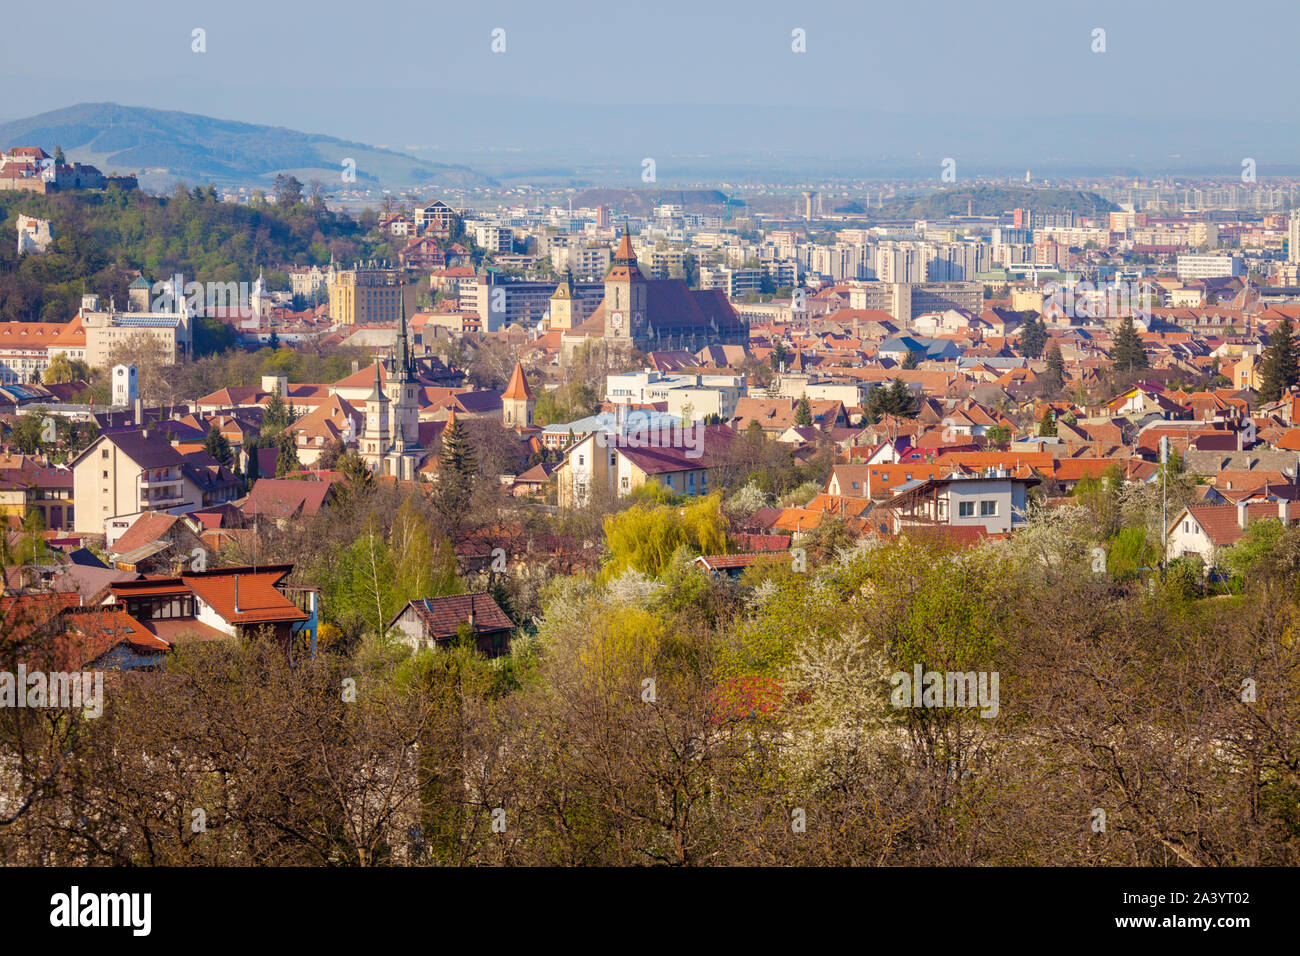 Cityscape of Brasov, Romania Stock Photo